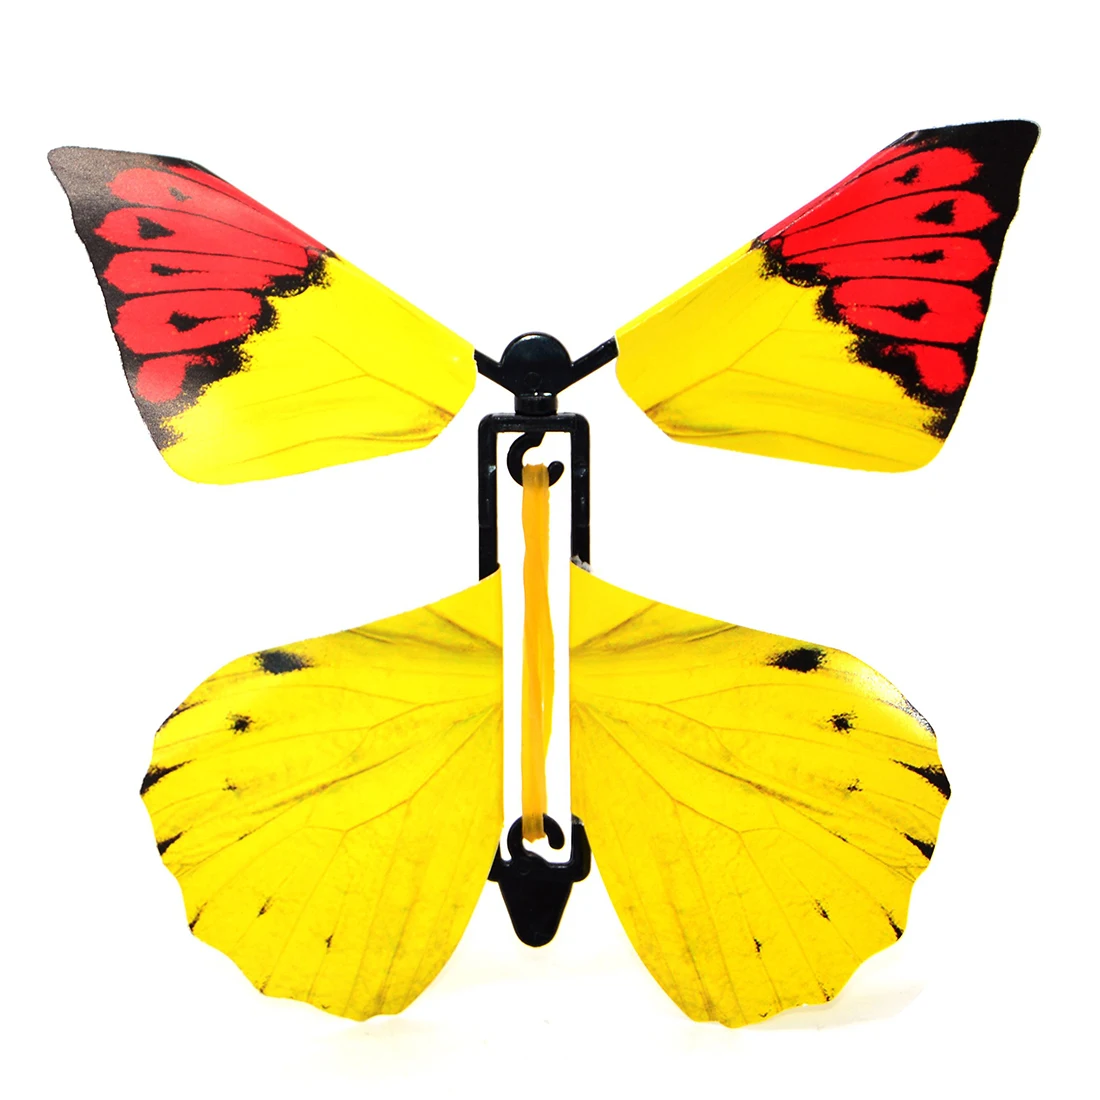 58 шт. дикие животные игрушка Моделирование животные модель Волшебная Летающая бабочка маленький волшебный трюк смешной сюрприз шутка игрушка для детей